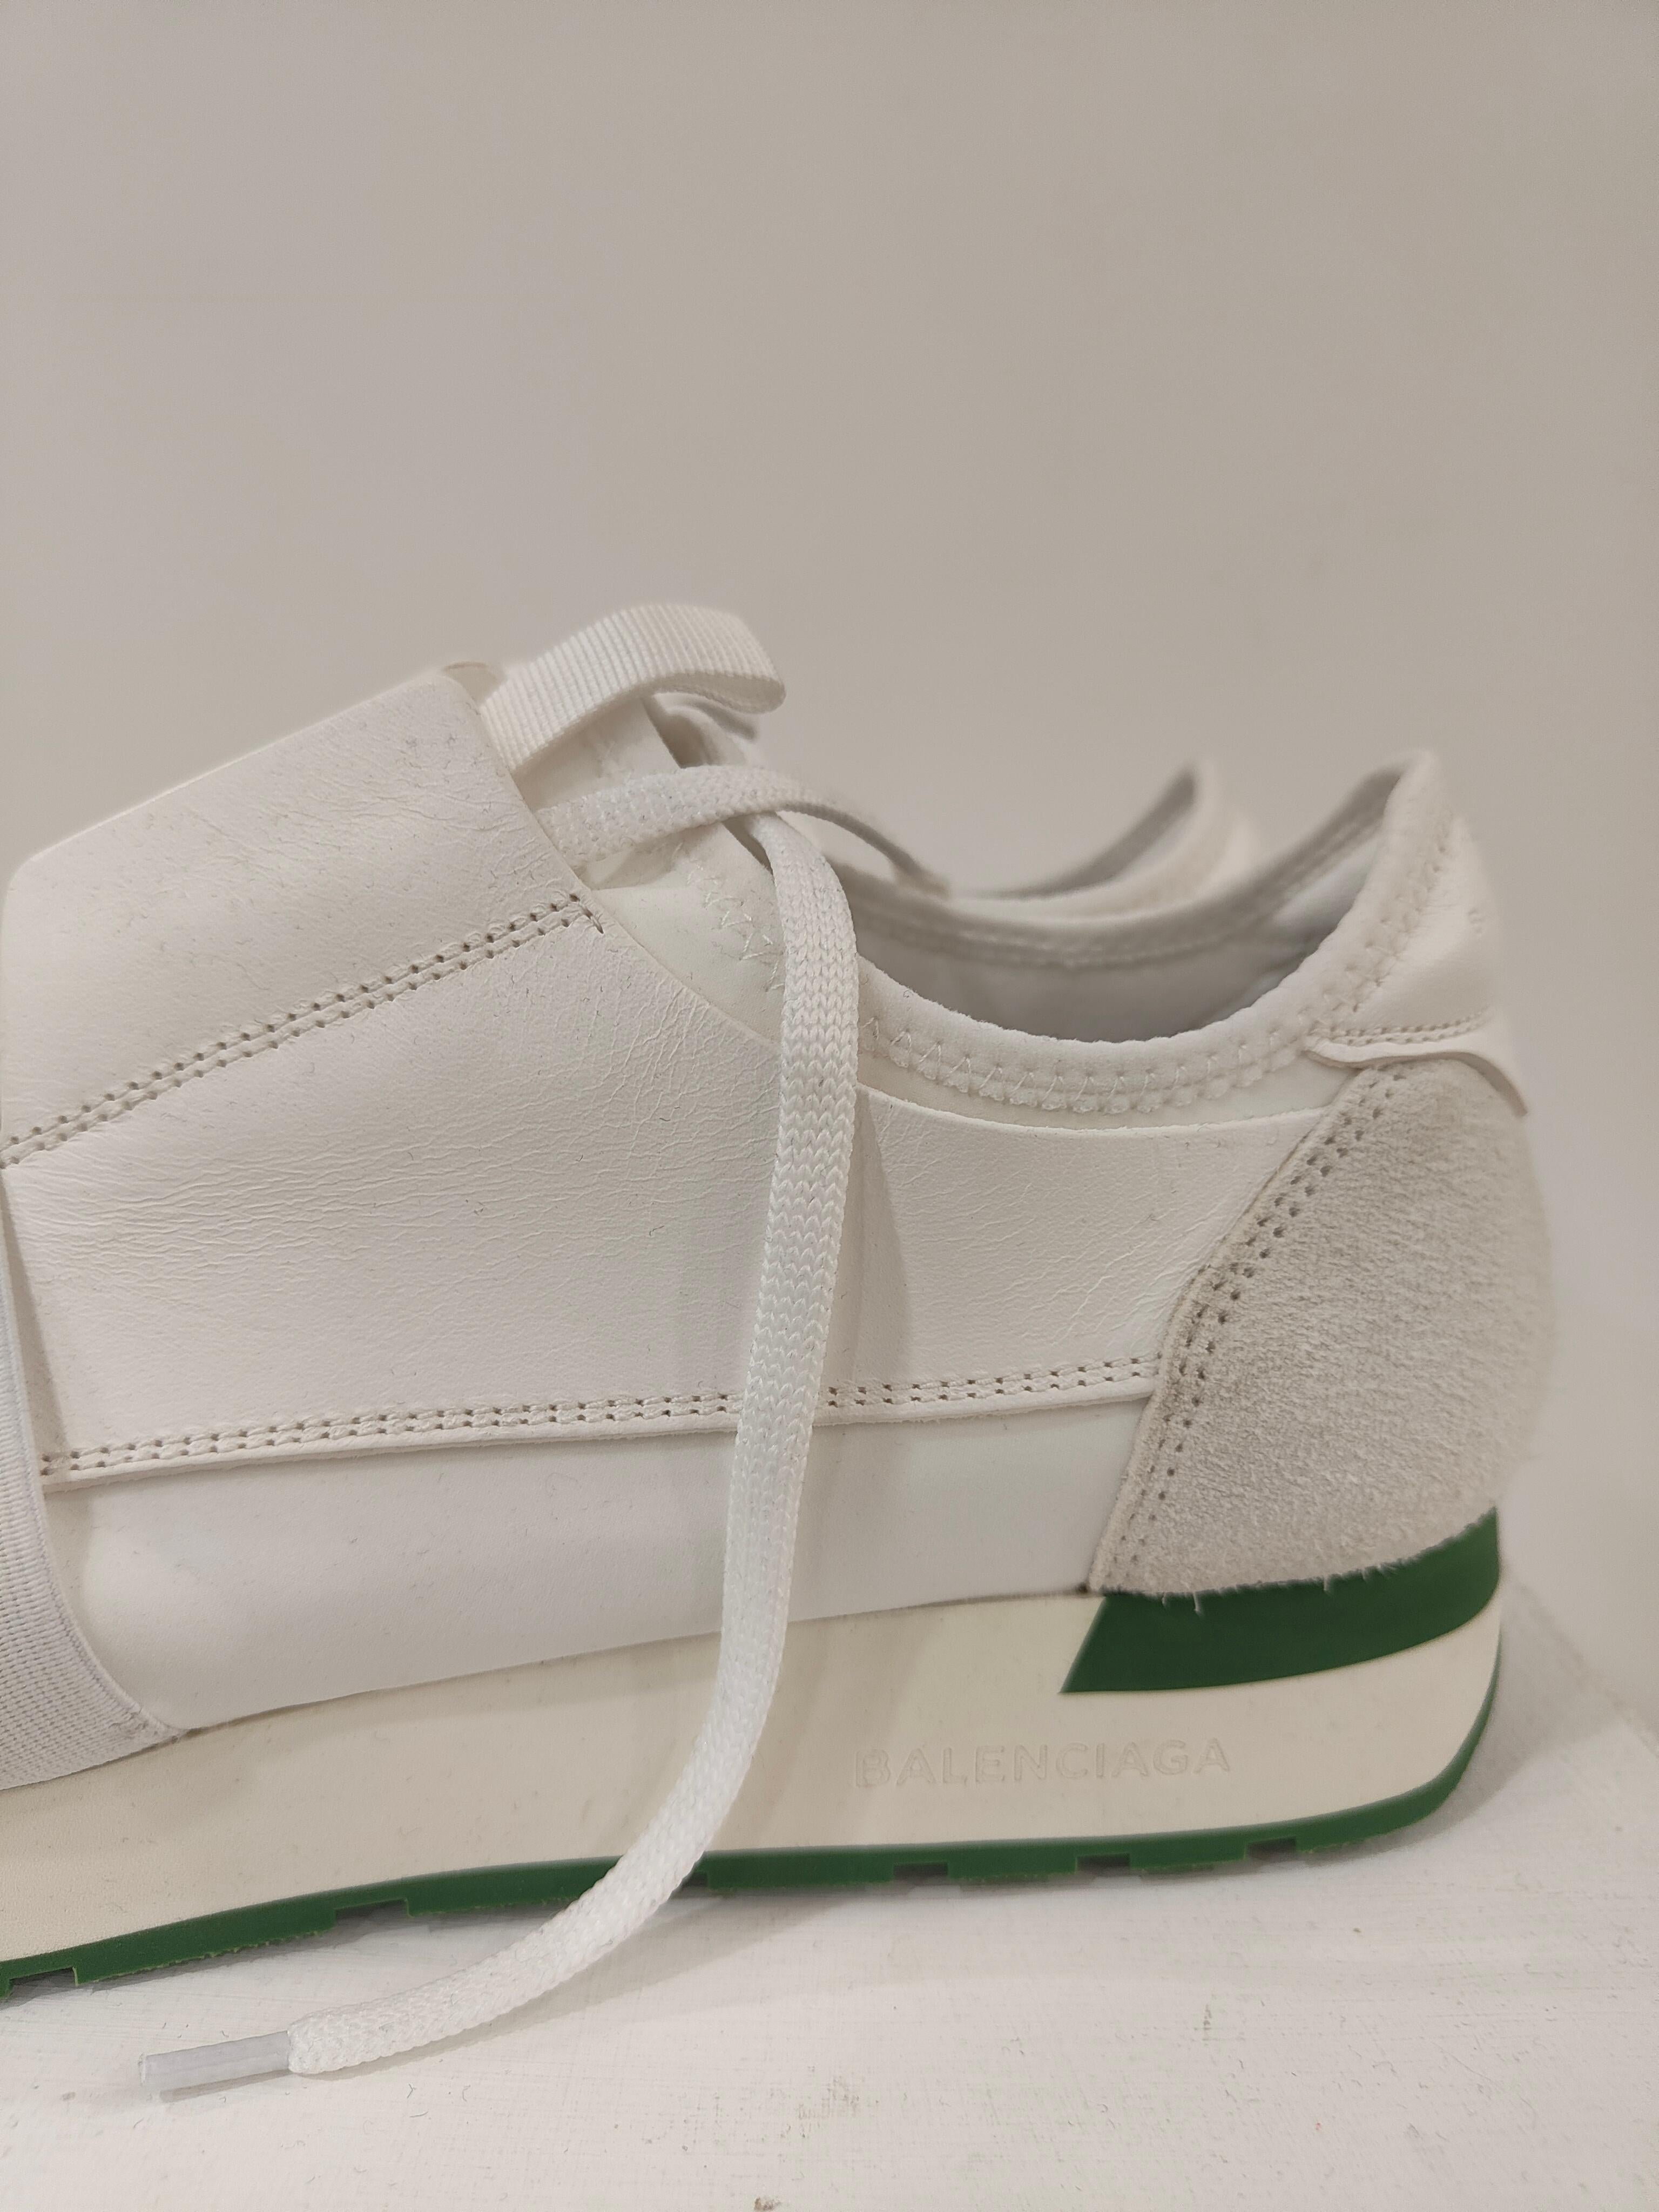 green and white balenciaga shoes